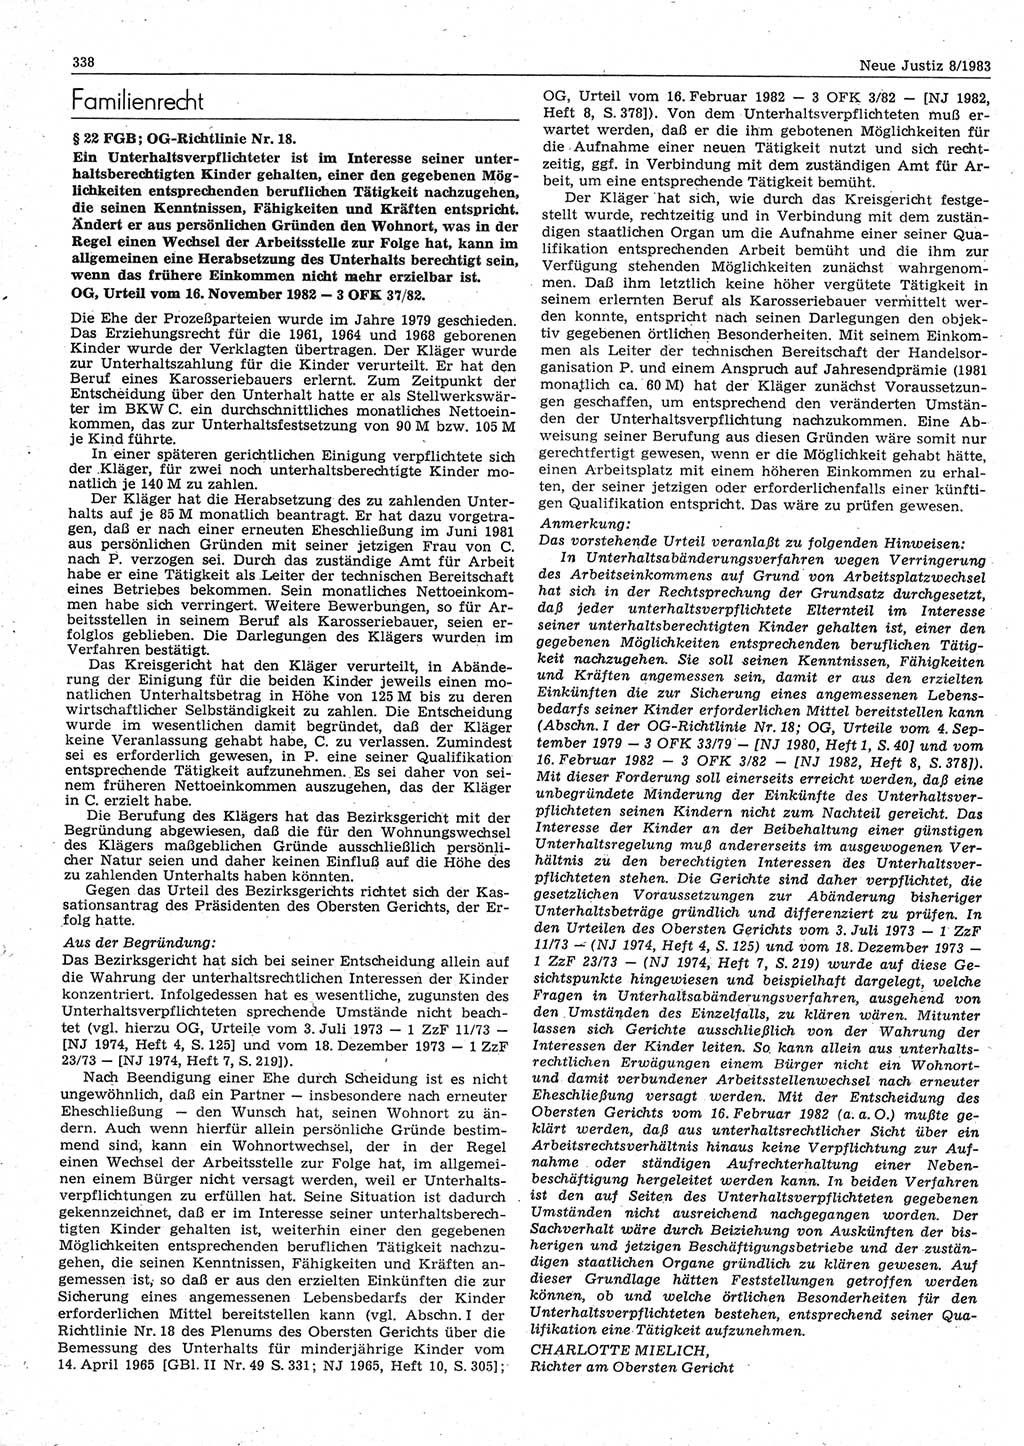 Neue Justiz (NJ), Zeitschrift für sozialistisches Recht und Gesetzlichkeit [Deutsche Demokratische Republik (DDR)], 37. Jahrgang 1983, Seite 338 (NJ DDR 1983, S. 338)